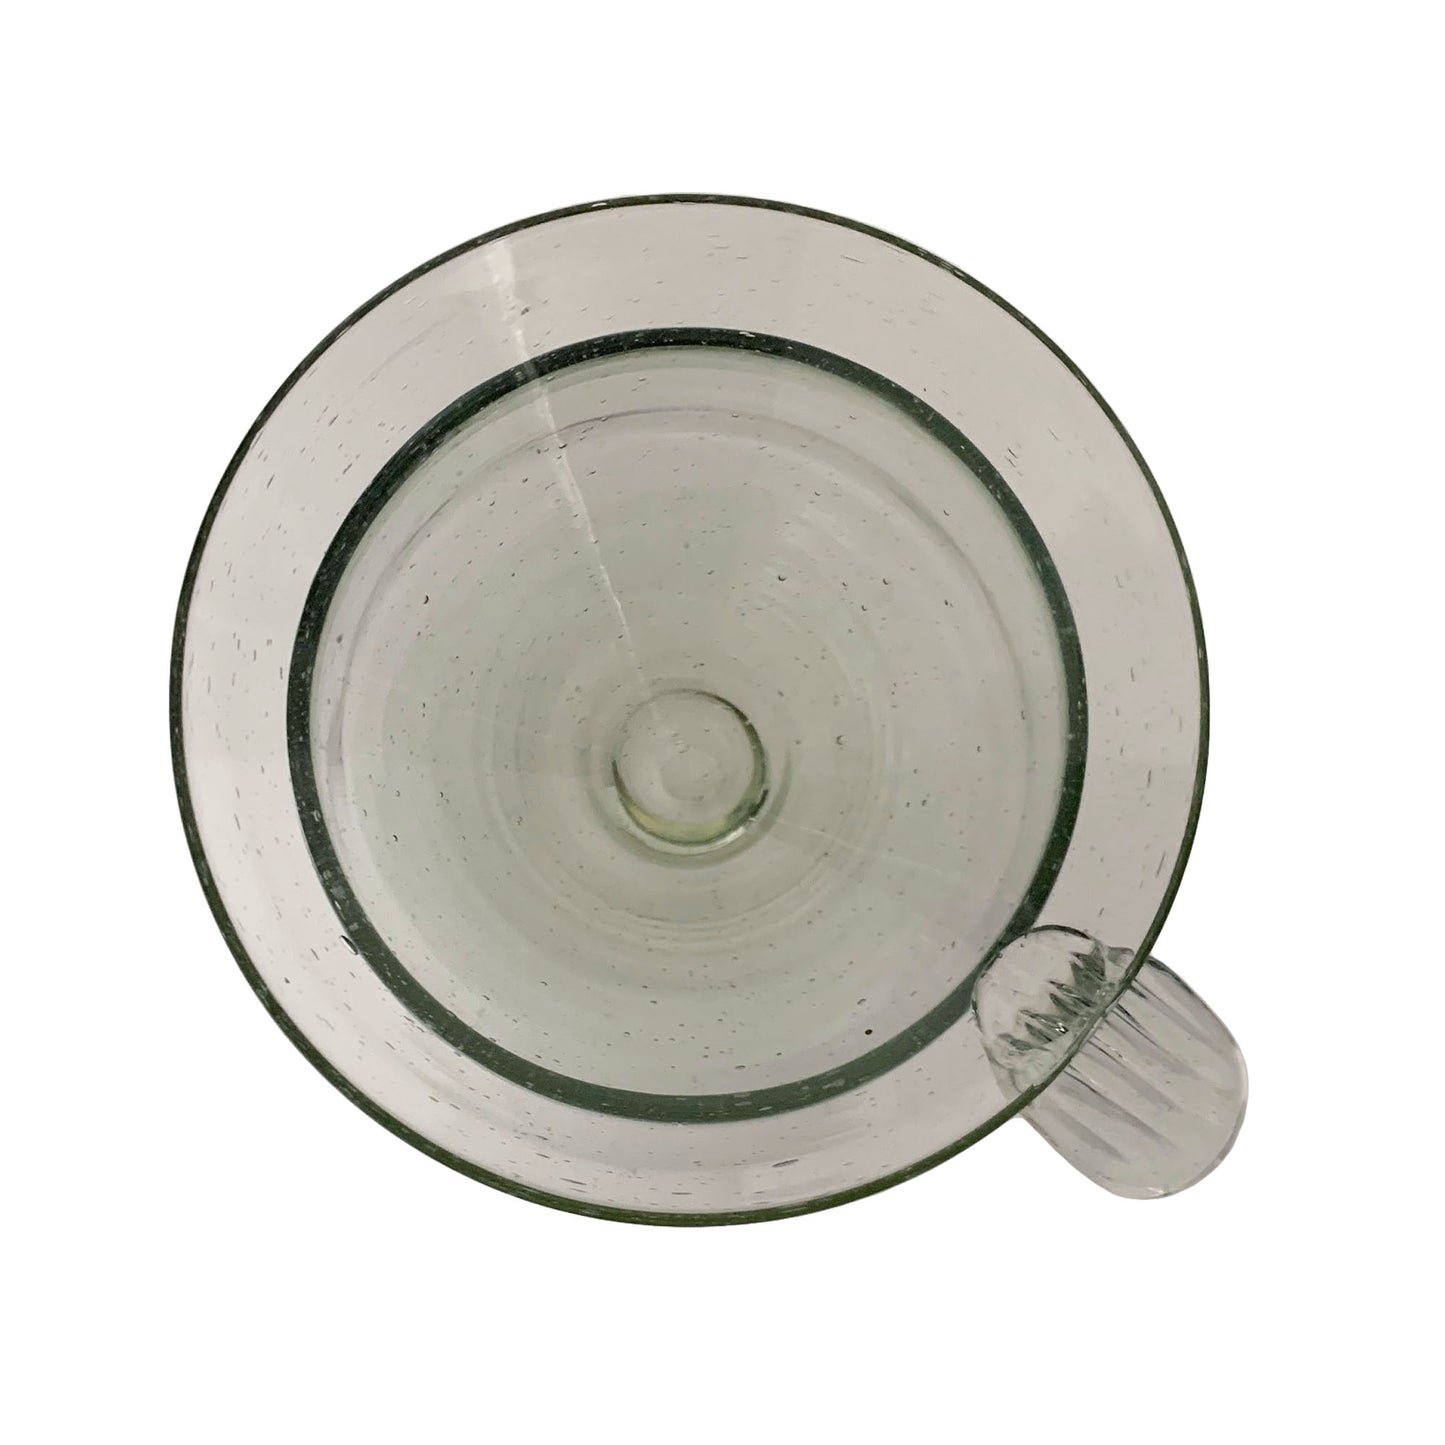 Martini soplado a mano | Vaso Margarita (o plato de Ceviche) con Enfriador- Hecho a mano en Guatemala con vidrio reciclado *Este listado es para un juego*